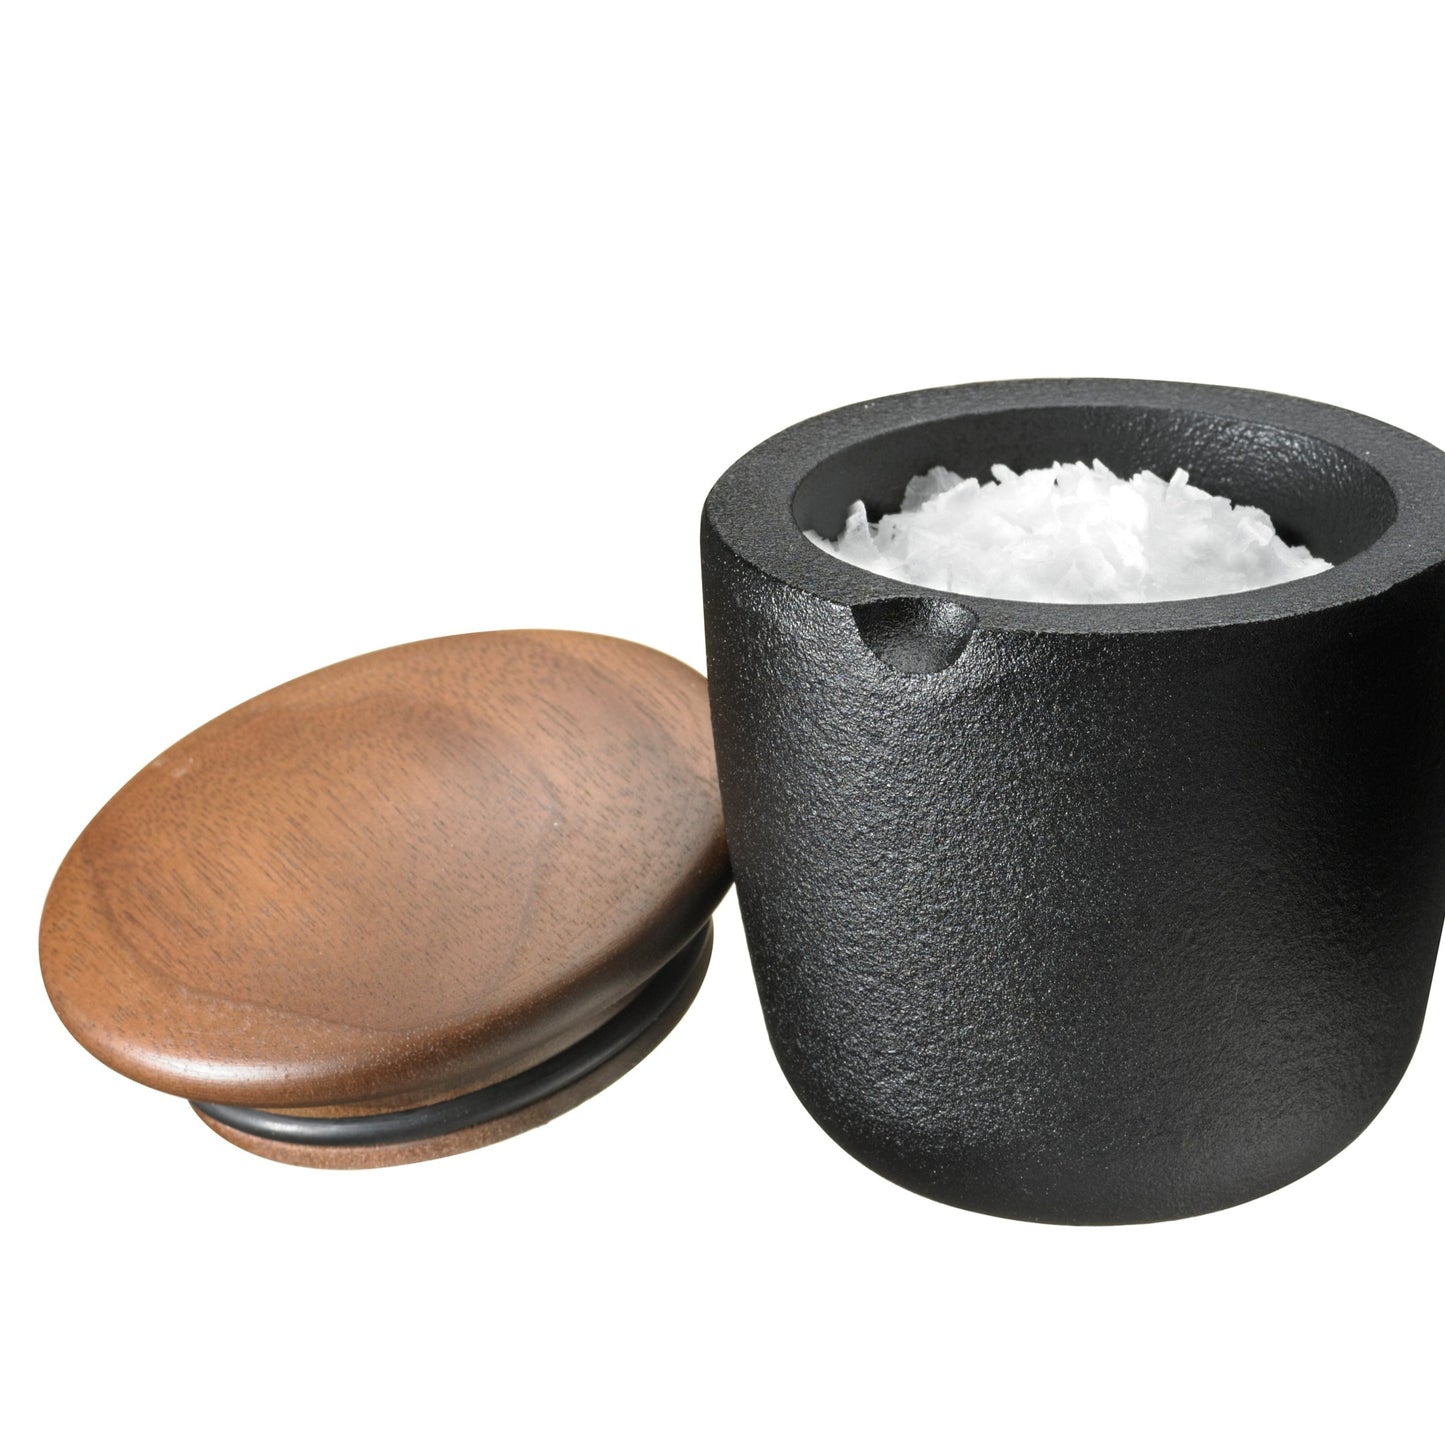 Skeppshult - Swing Salt & Spice Bowl 7 cm